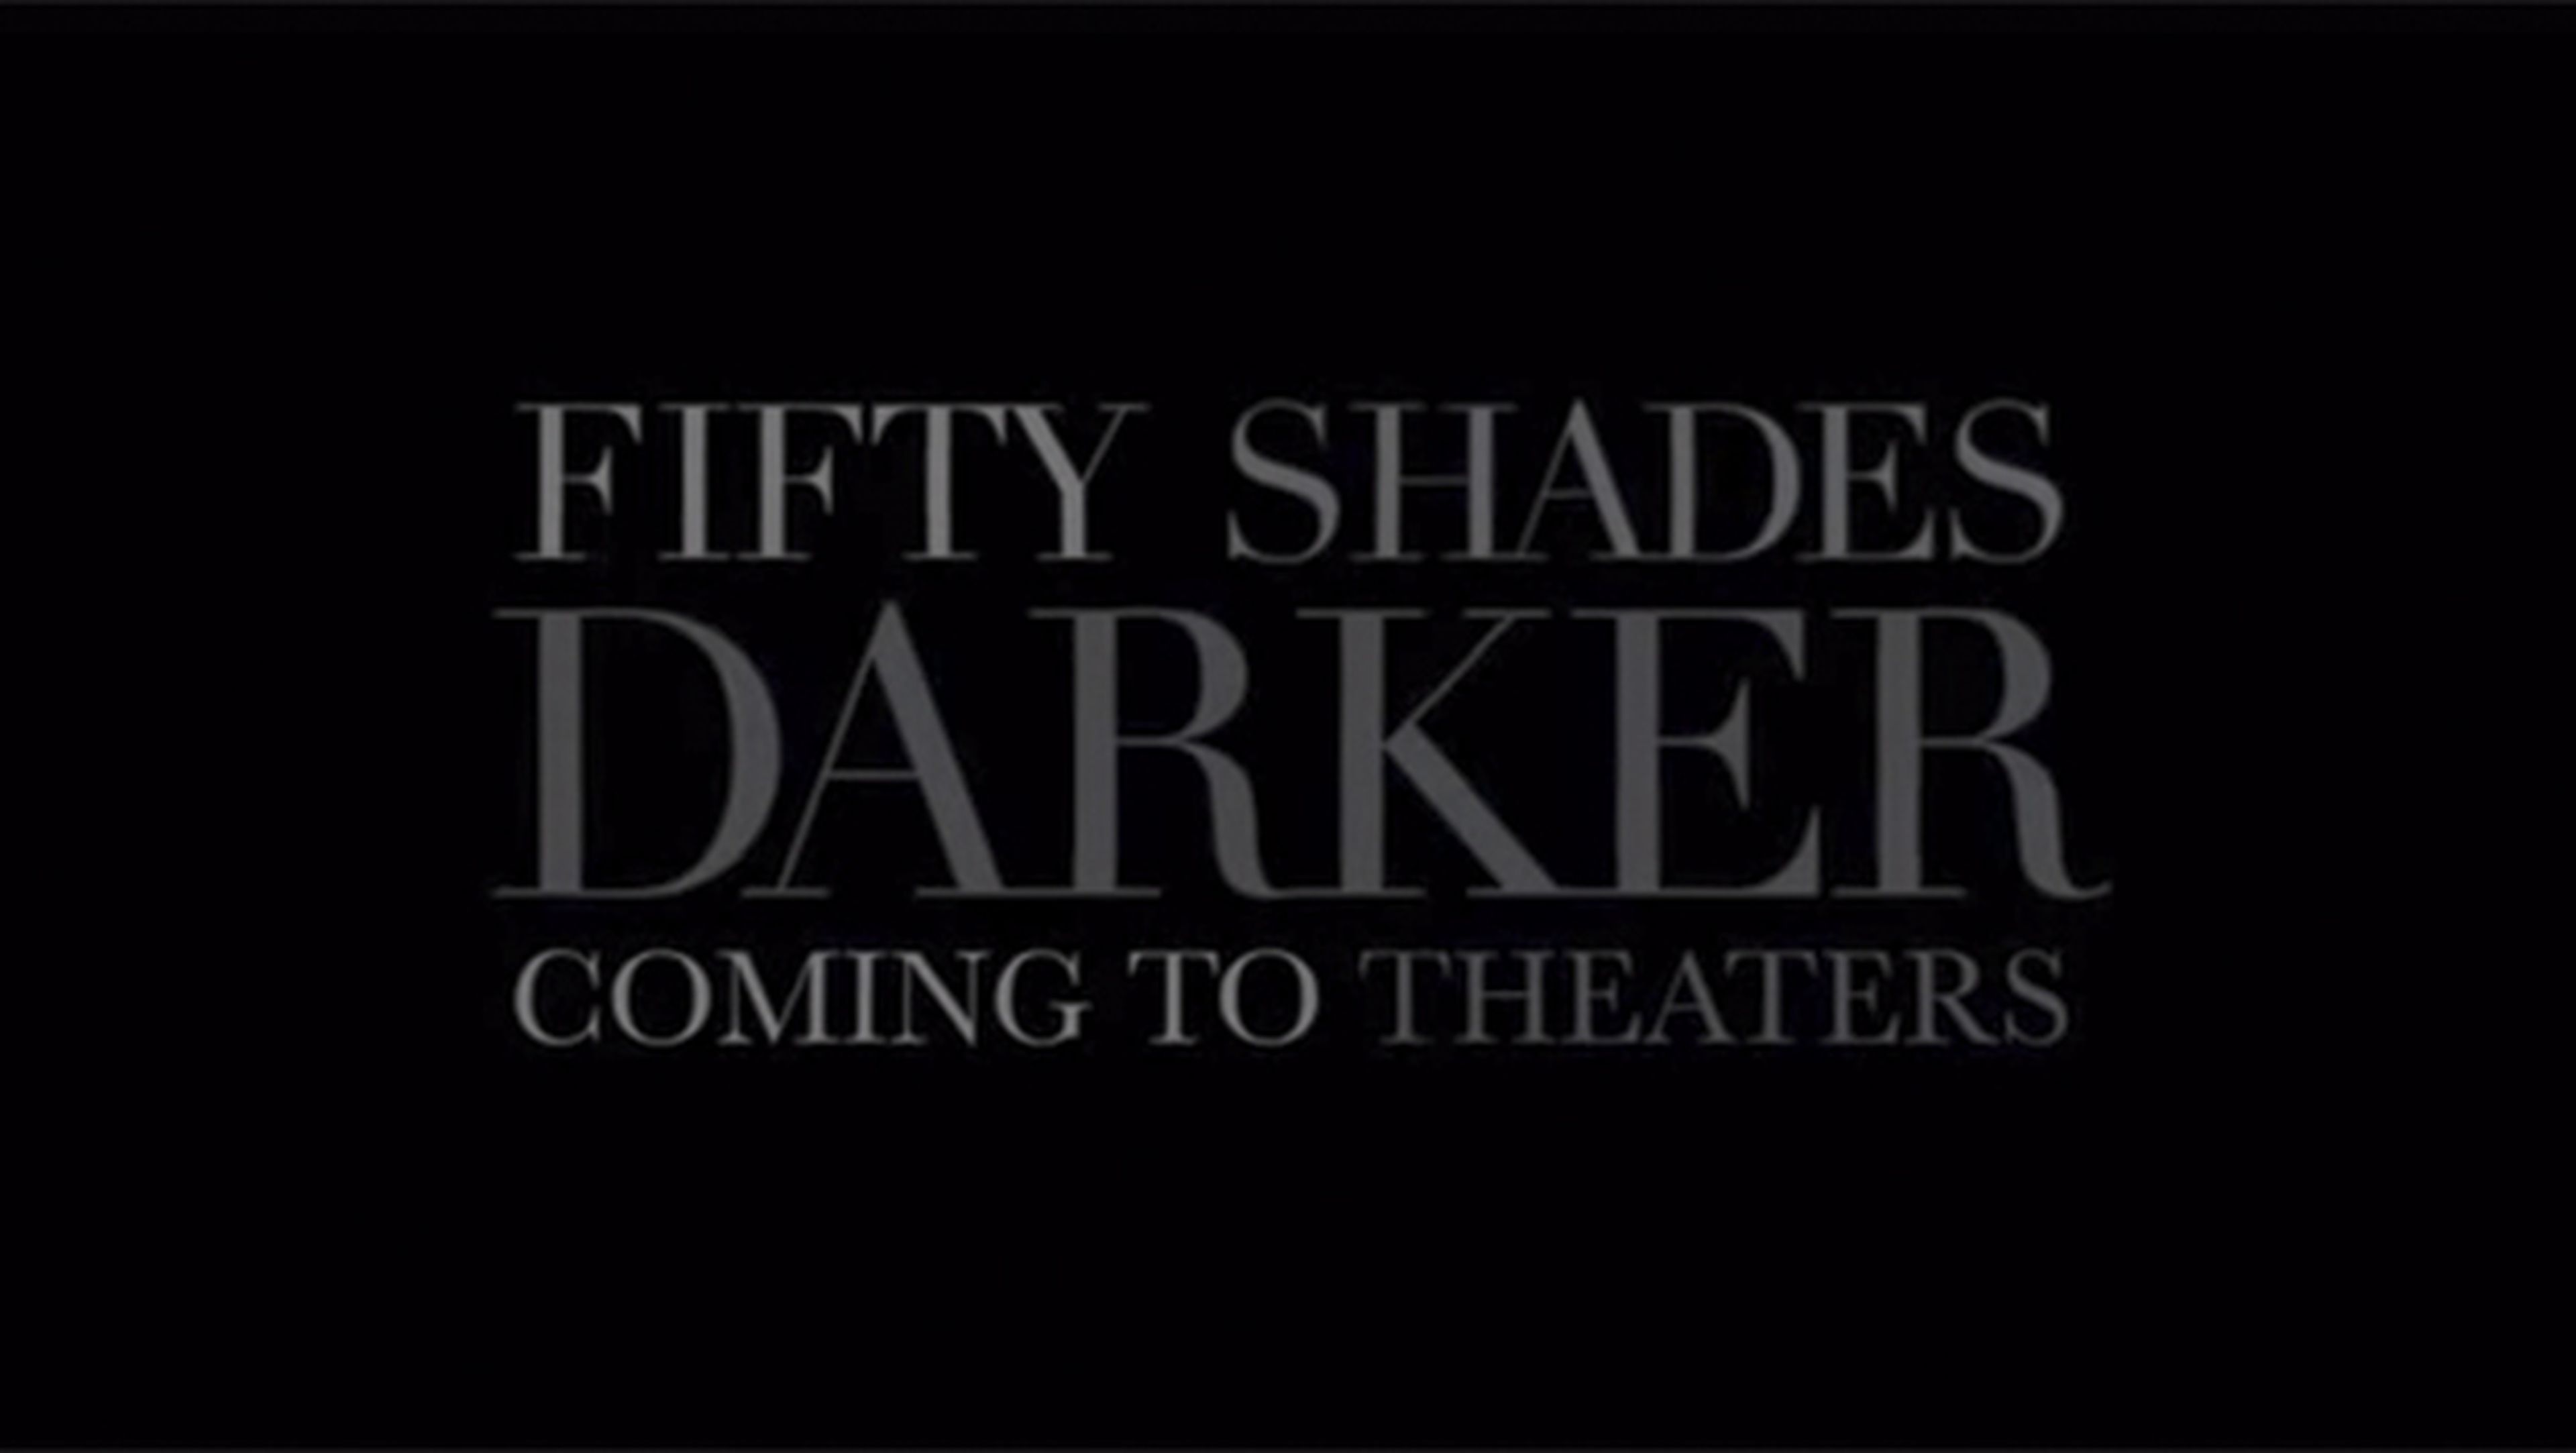 Llega el primer teaser de la secuela de "50 sombras de Grey"